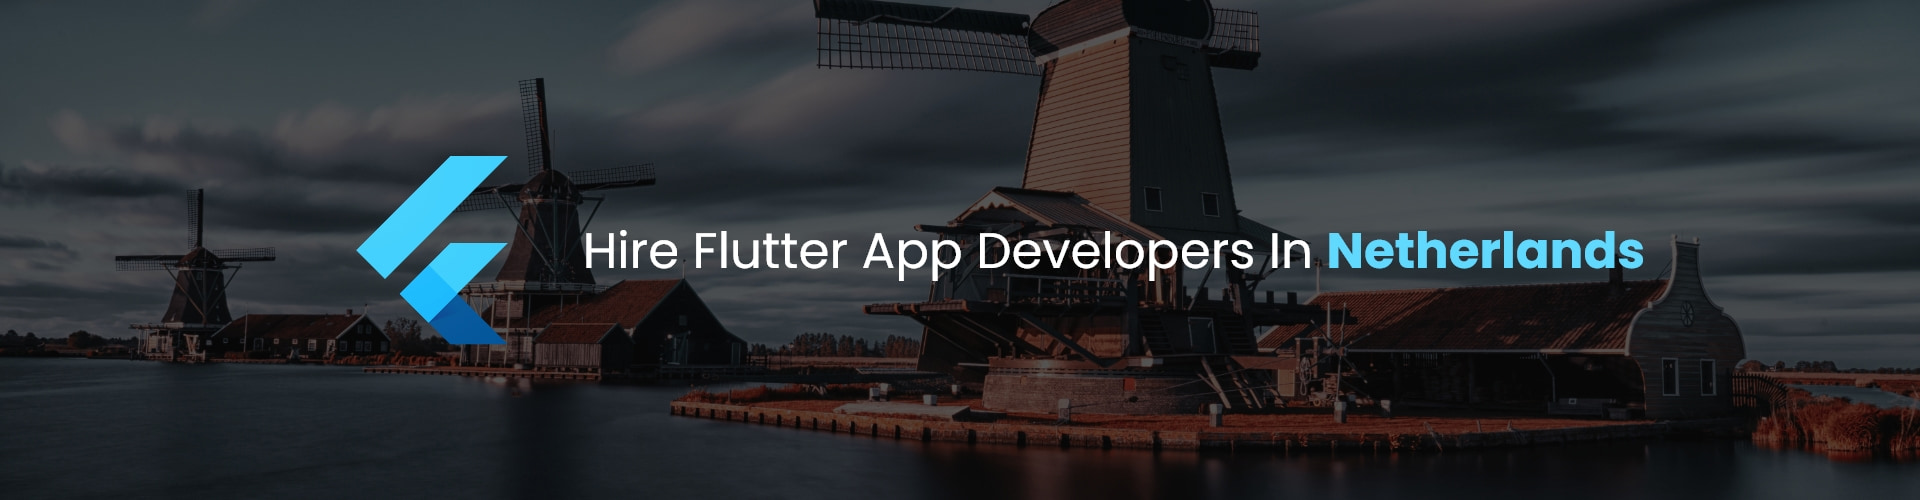 flutter app developers in netherlands